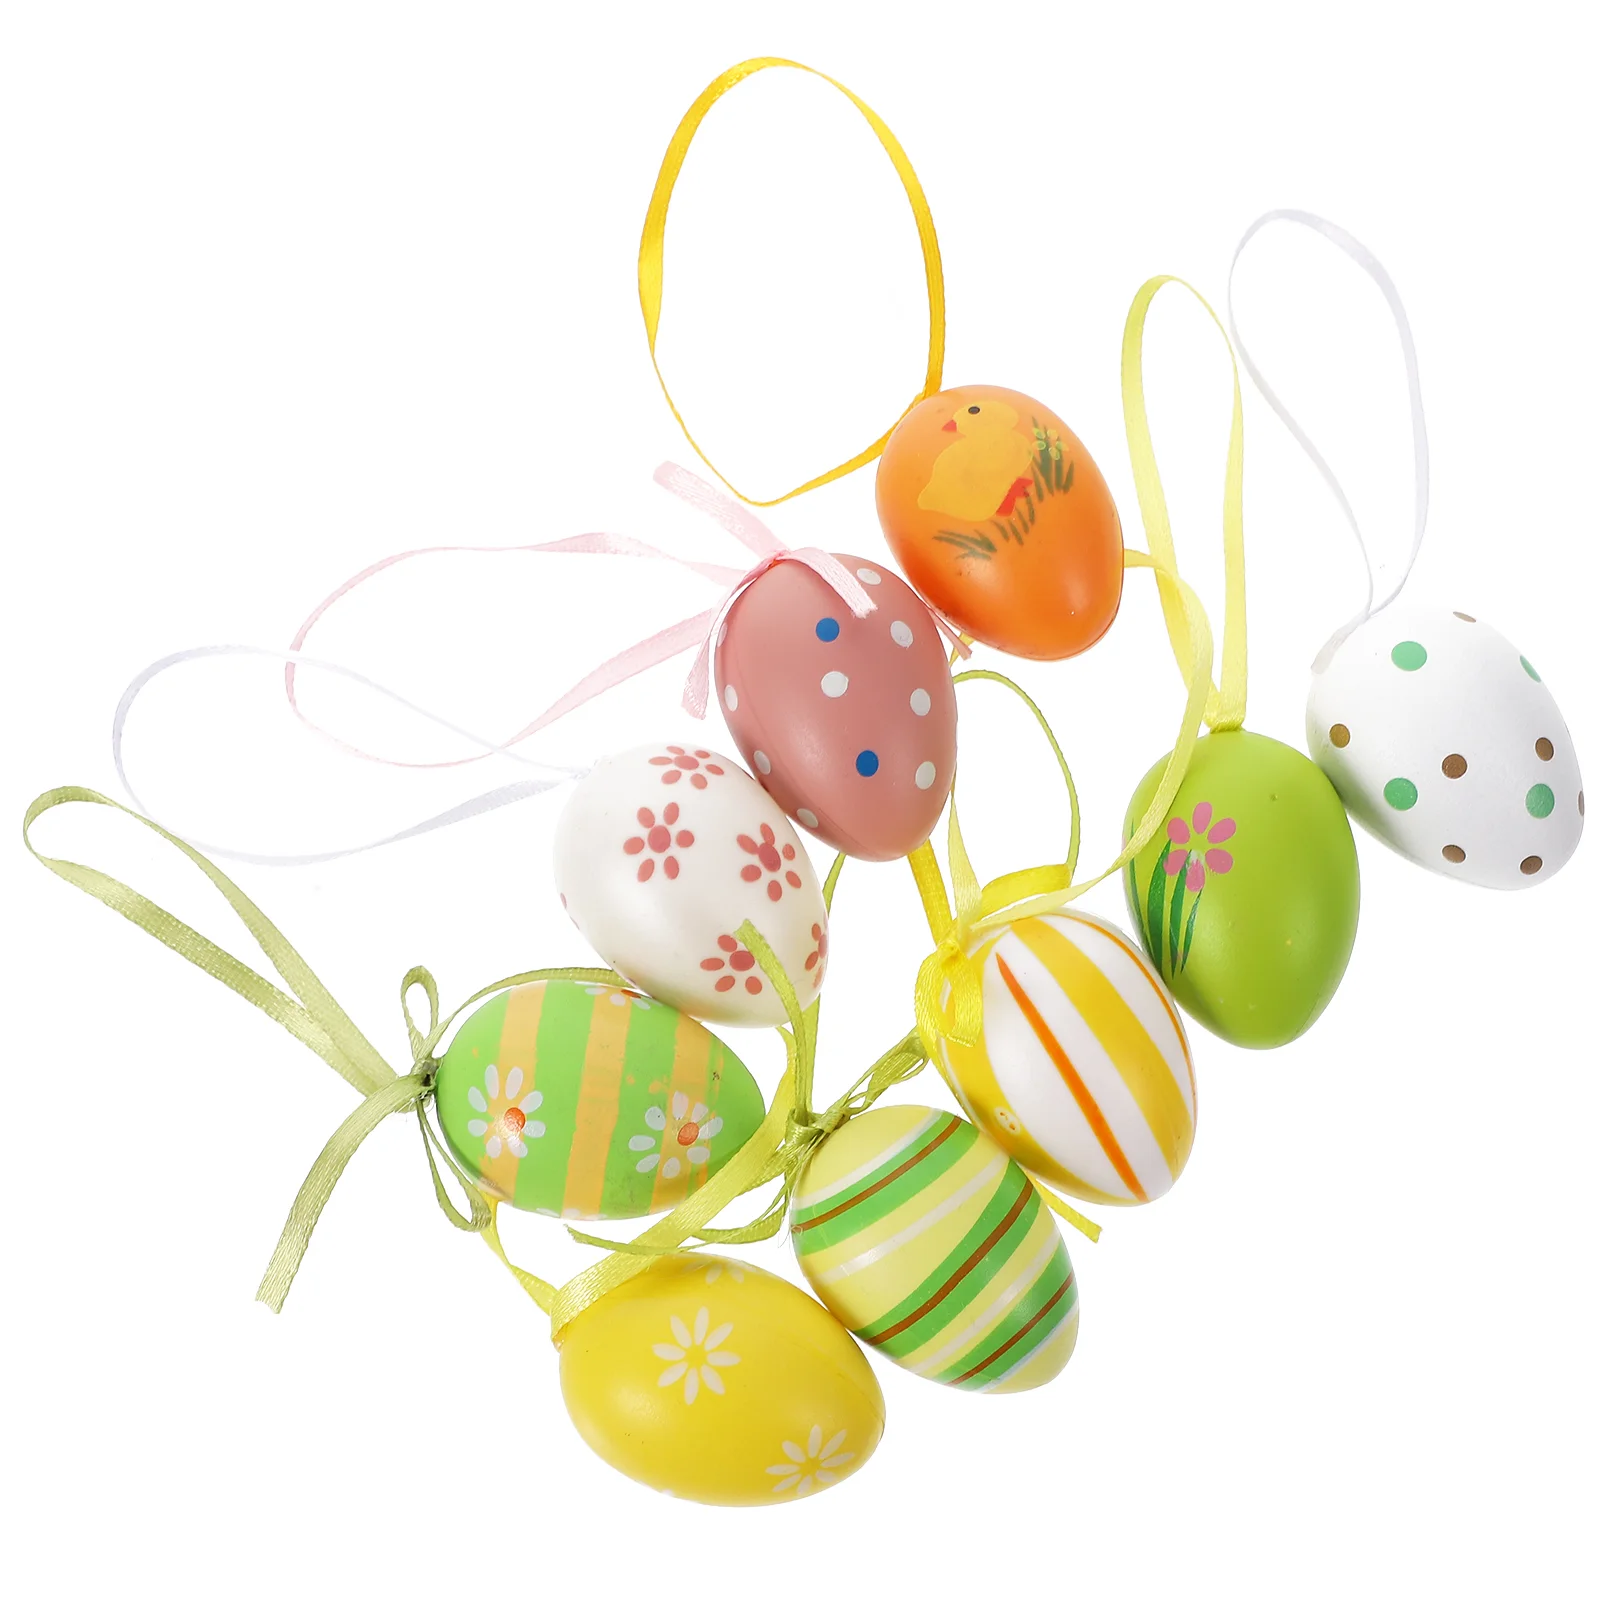 

24 Pcs Decoration Home Easter Egg Decorations Ornament Hanging Decoraciones Para Salas Casa Toys Filler Eggs